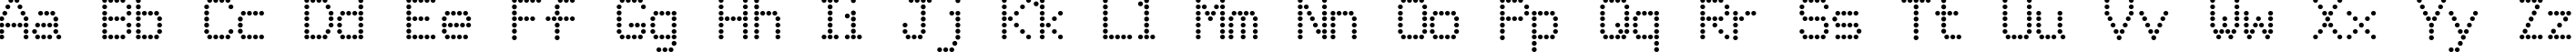 Пример написания английского алфавита шрифтом Matricha